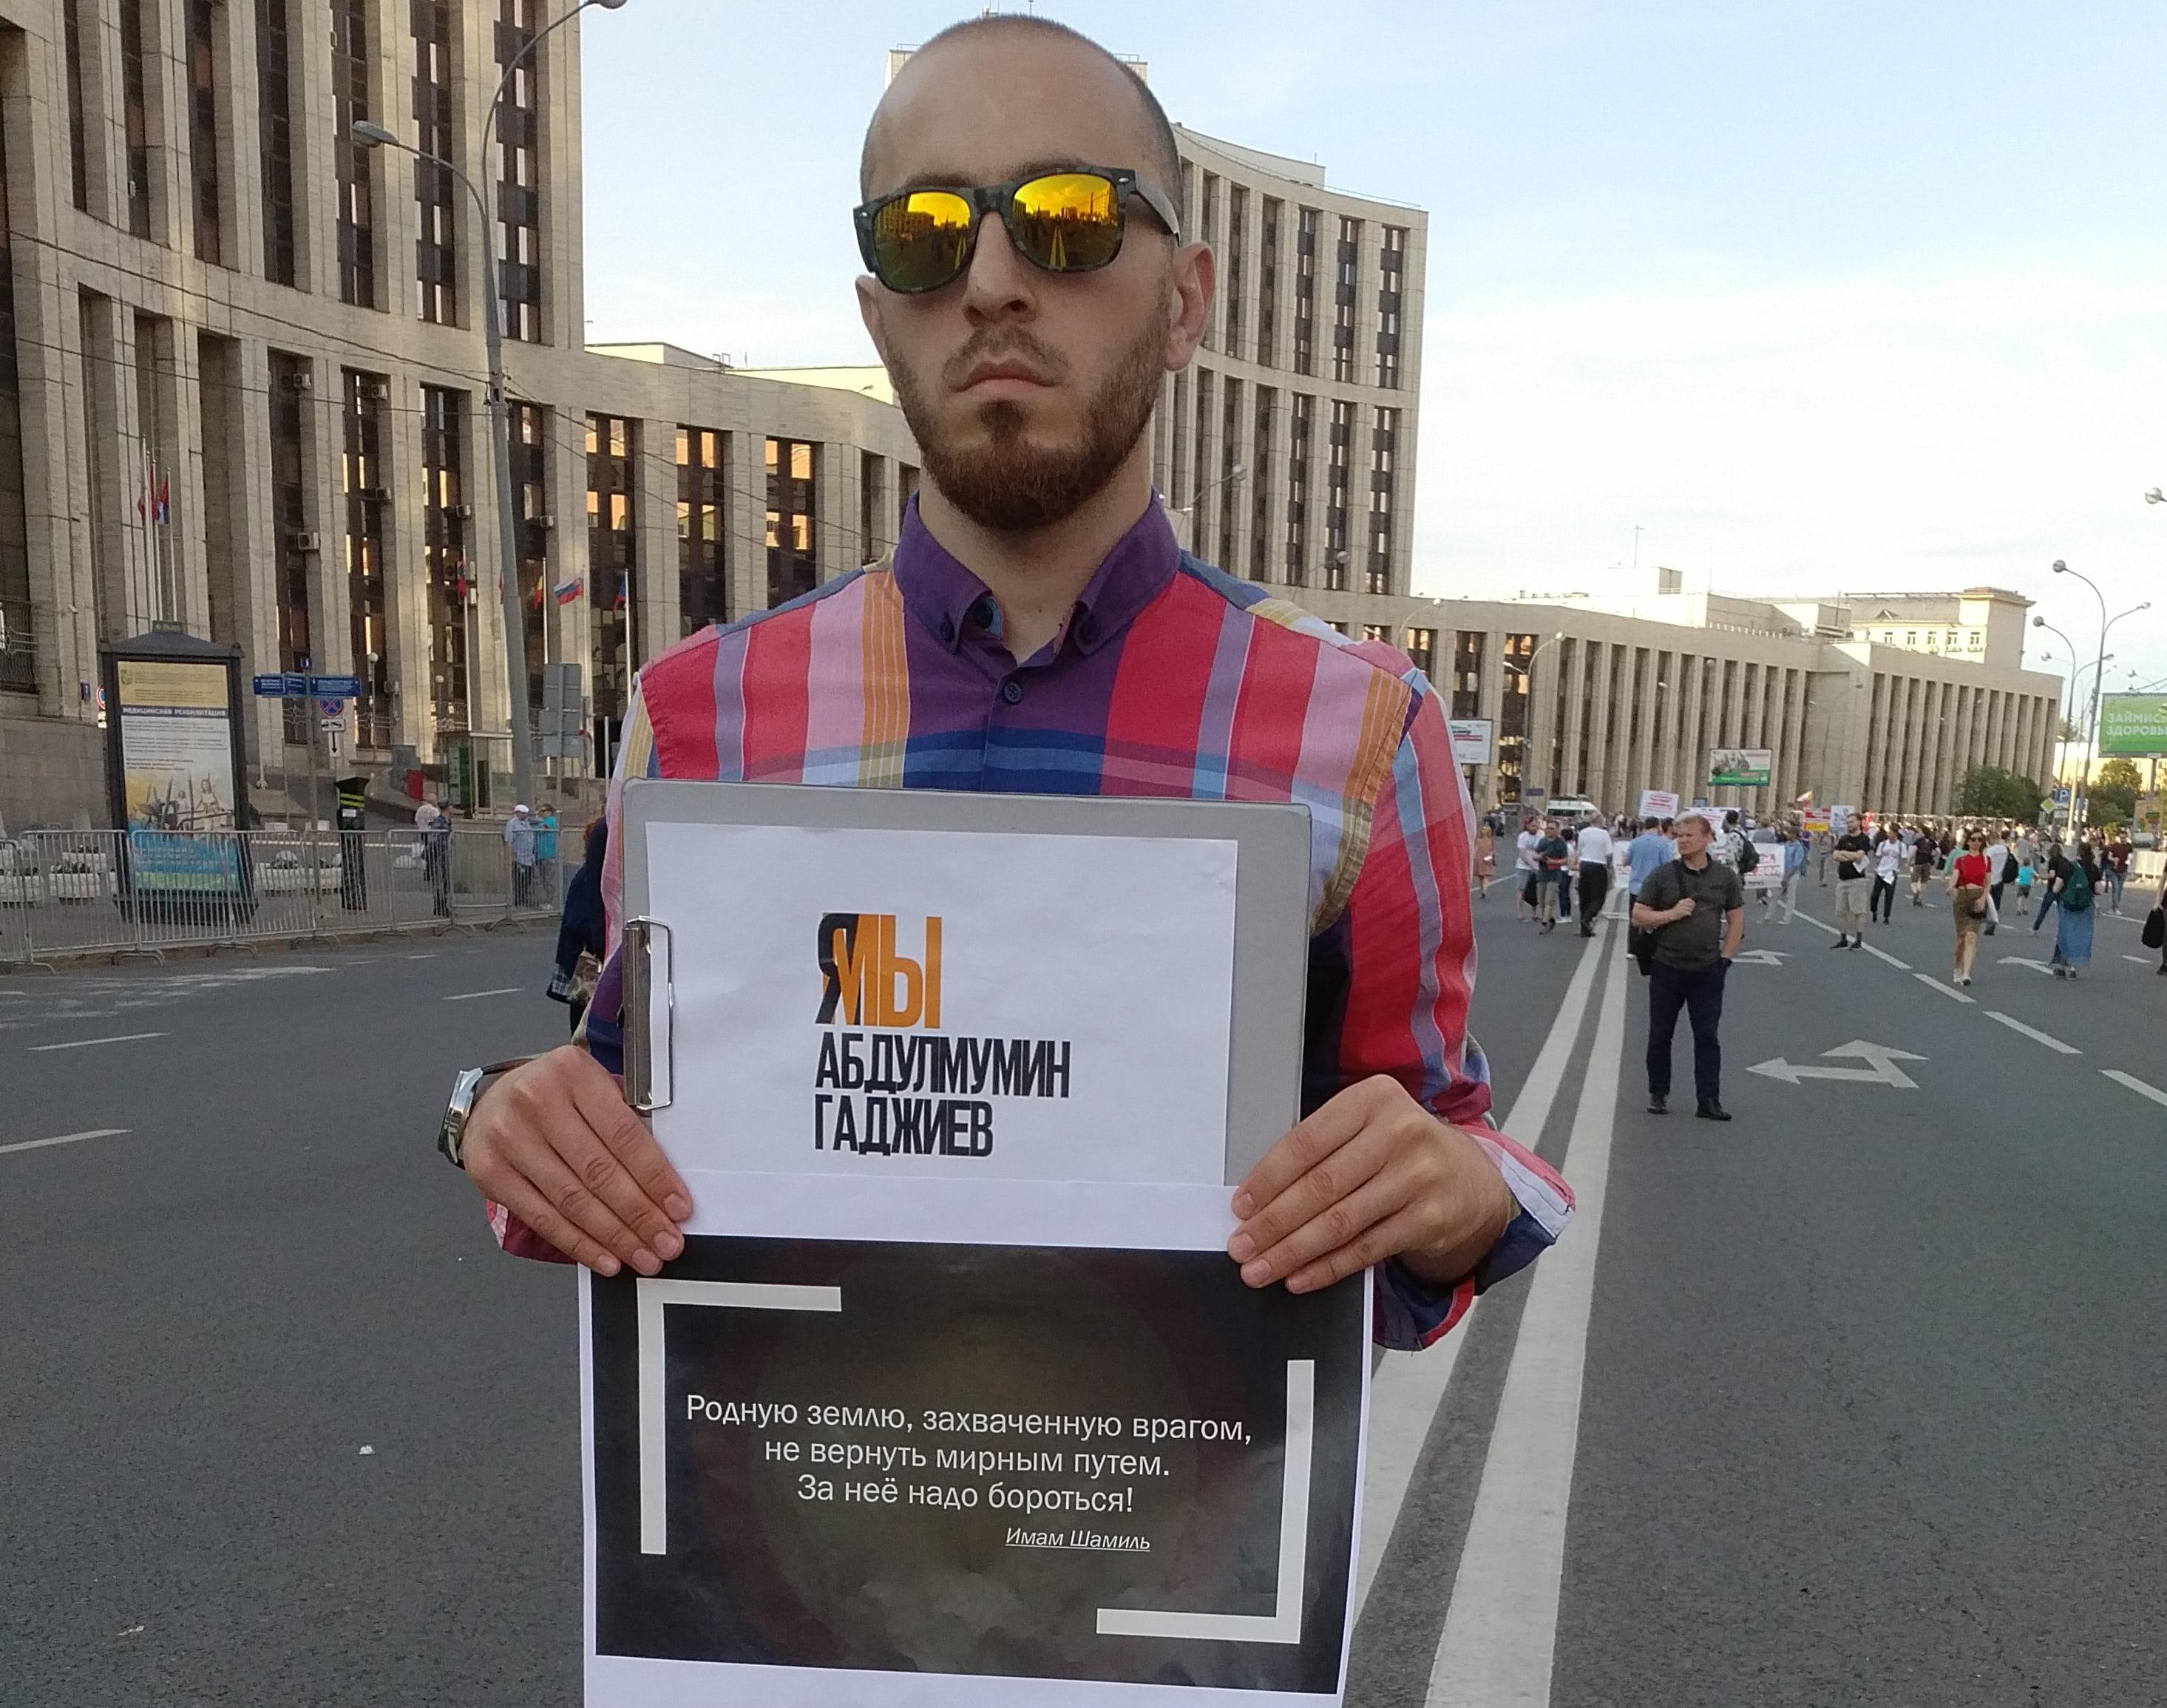 Активист держит плакат в поддержку Абдулмумина Гаджиева. Москва, 23 июня 2019 года. Фото Григория Шведова для "Кавказского узла".